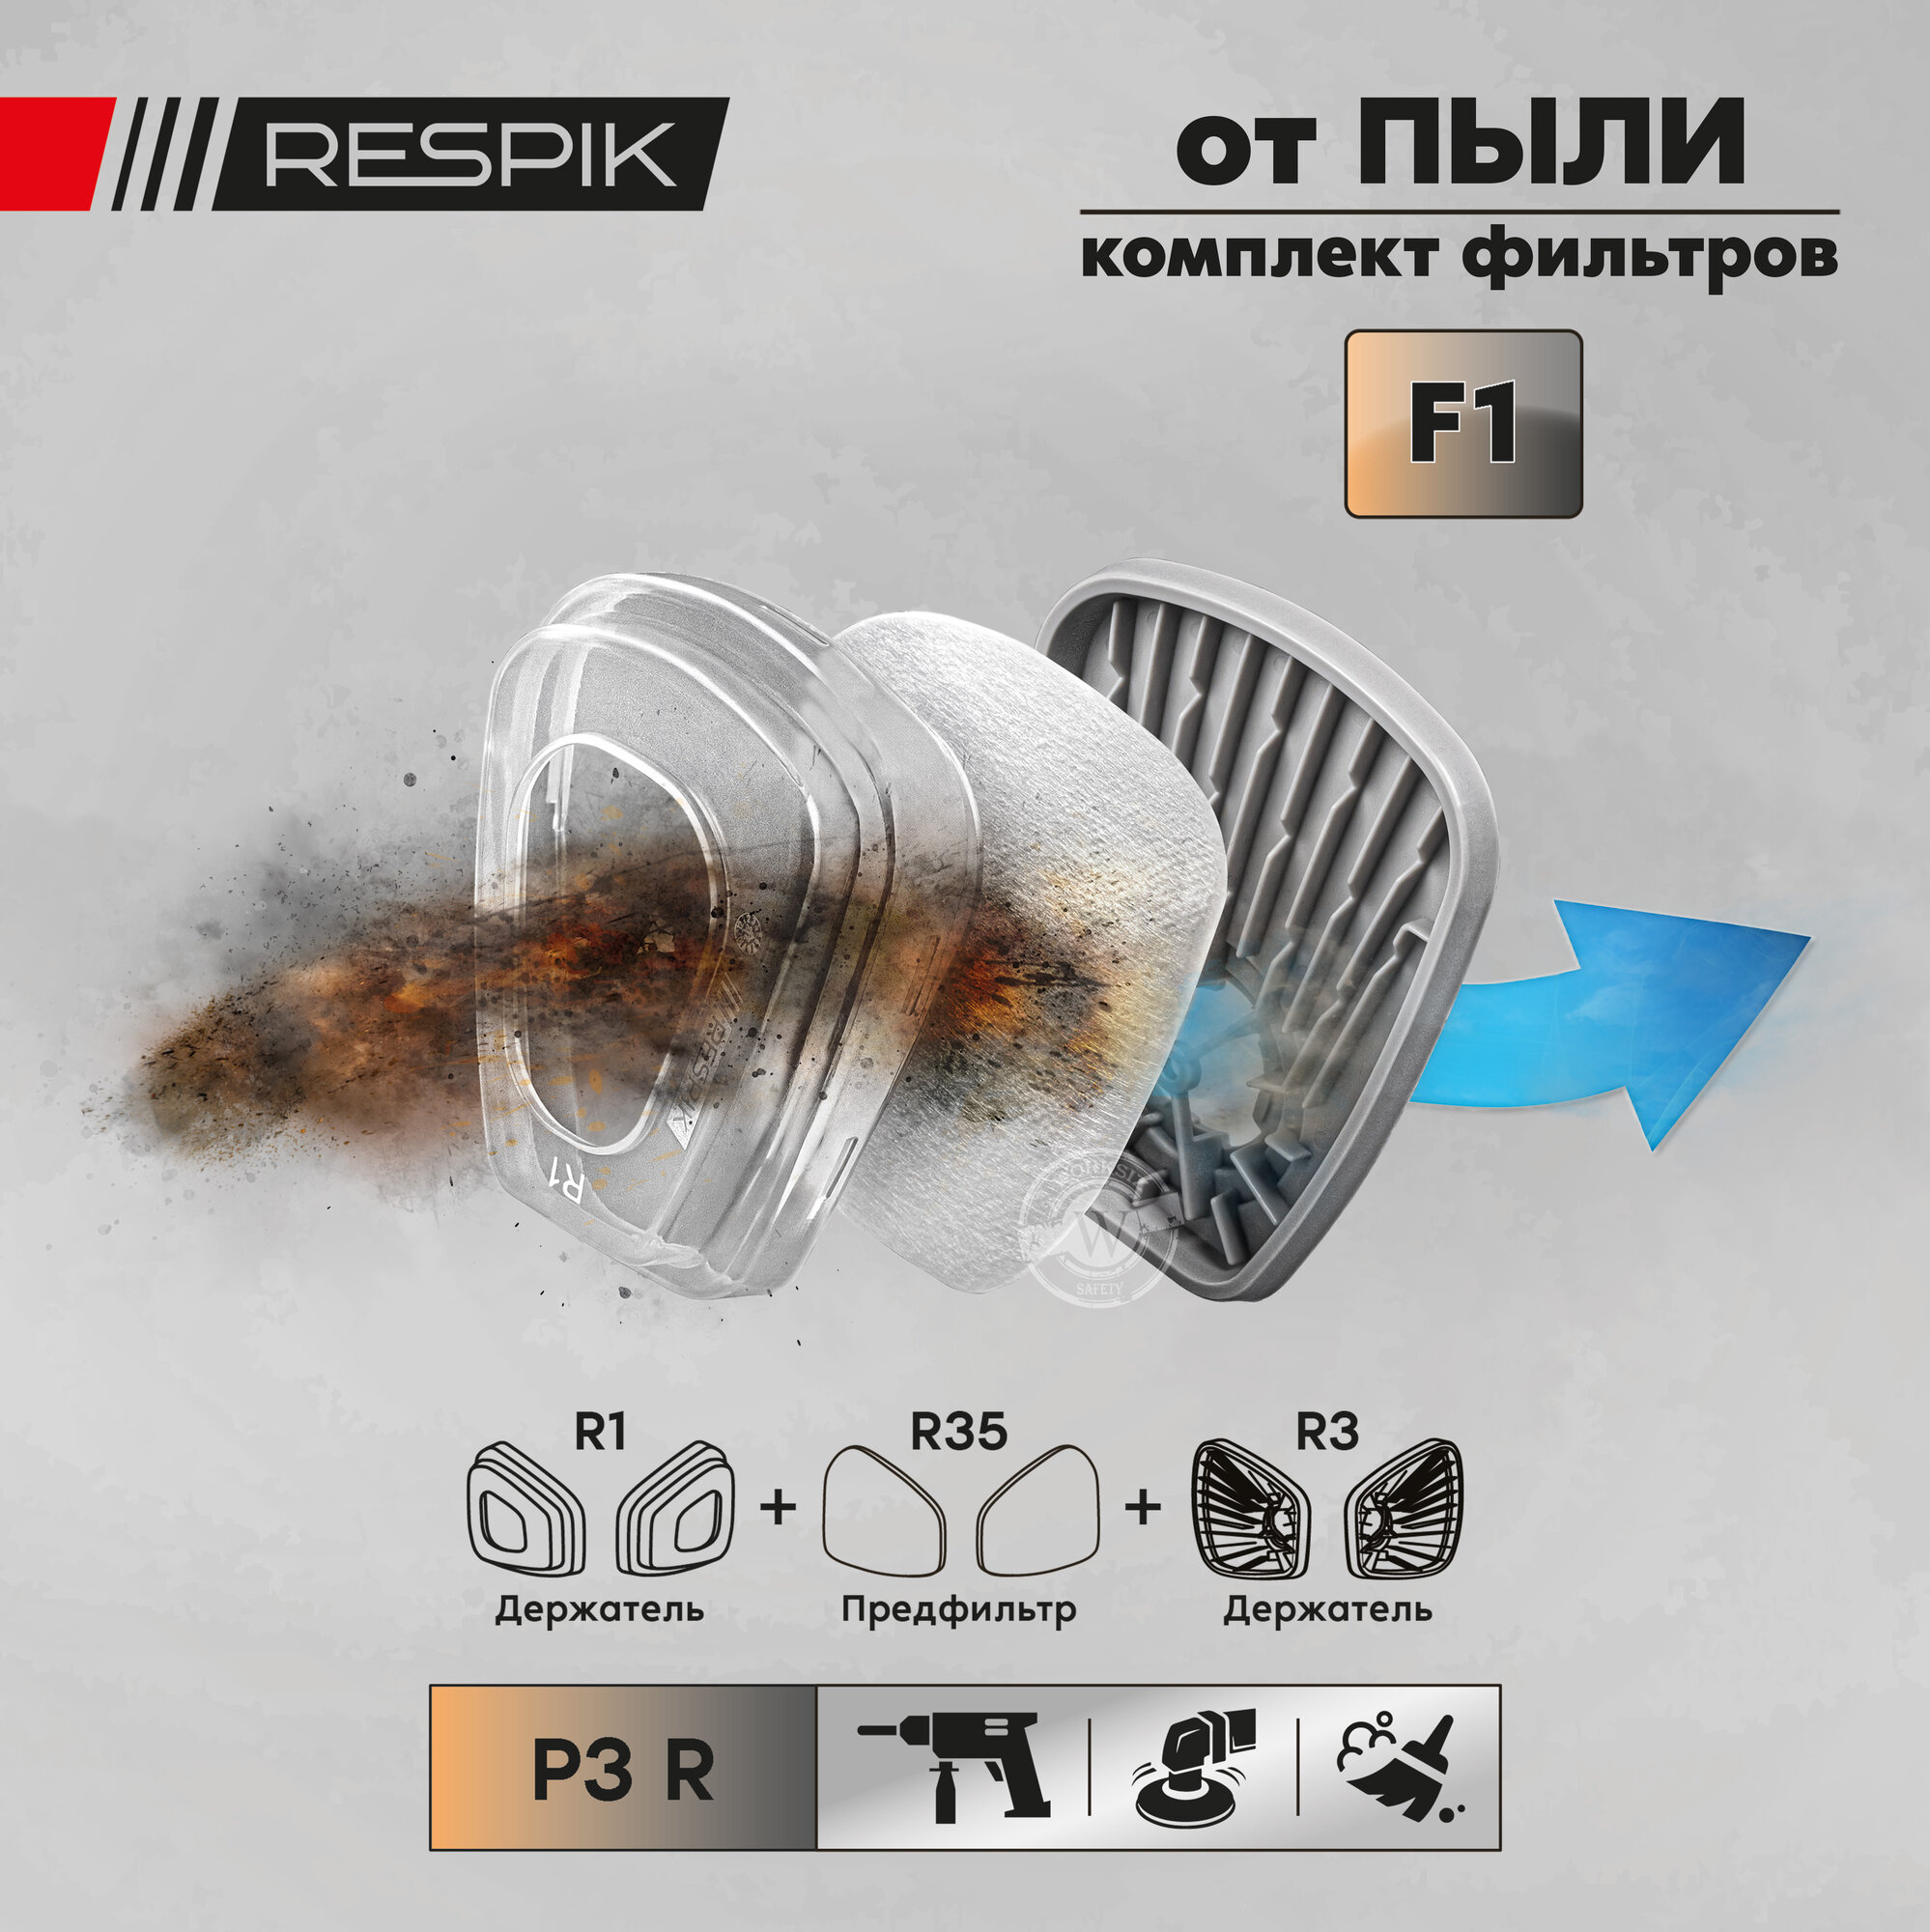 Комплект фильтров для защиты от пыли RESPIK R335 P3 R (R35 + R3 + R1) для масок / полумасок 3М , JETA SAFETY , руссиз , RESPIK